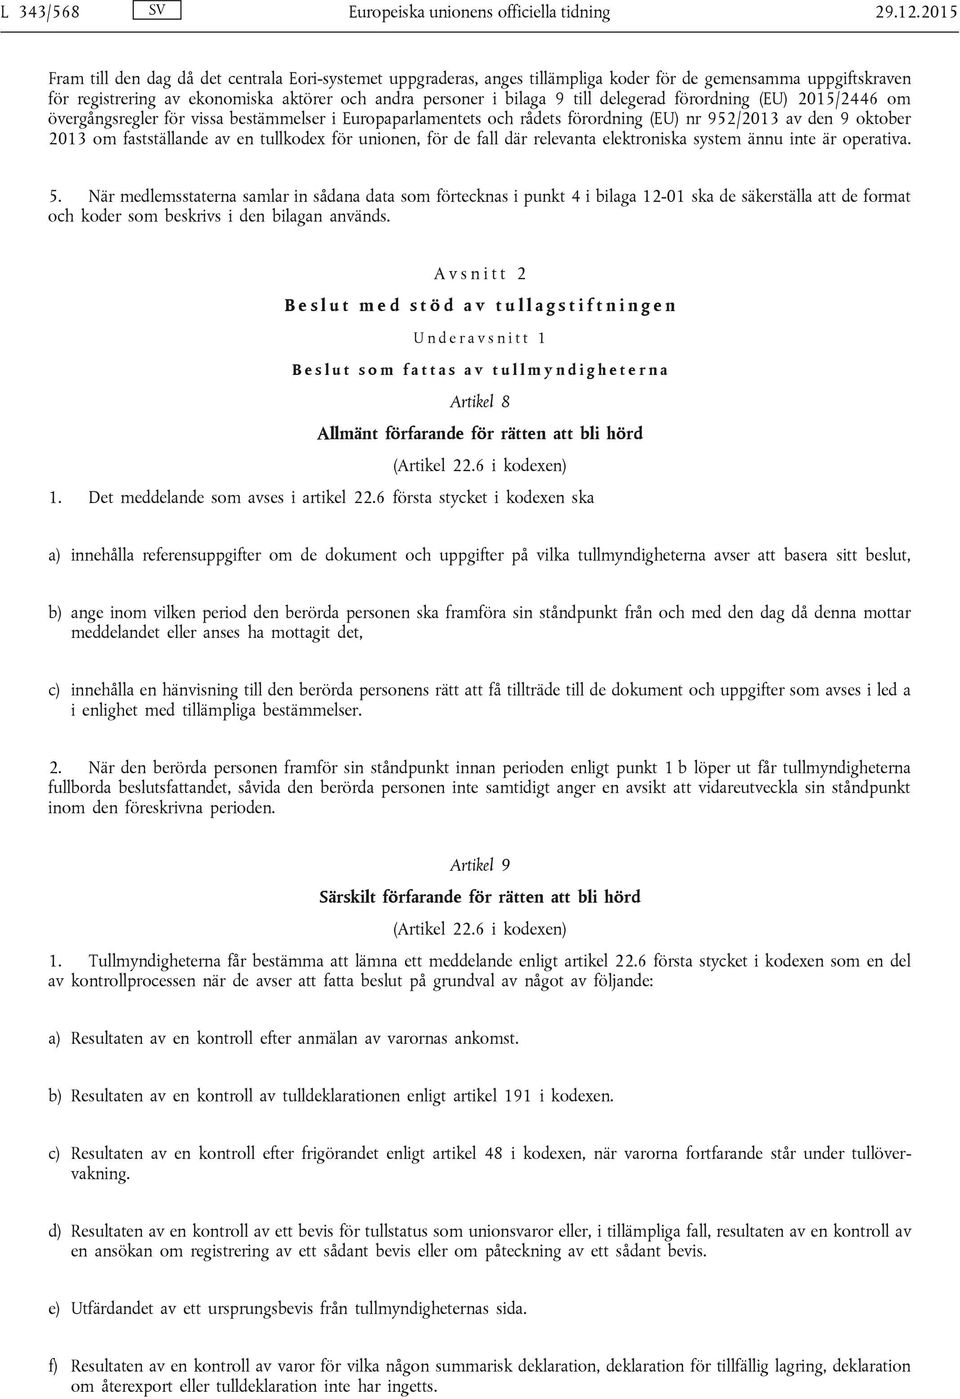 delegerad förordning (EU) 2015/2446 om övergångsregler för vissa bestämmelser i Europaparlamentets och rådets förordning (EU) nr 952/2013 av den 9 oktober 2013 om fastställande av en tullkodex för